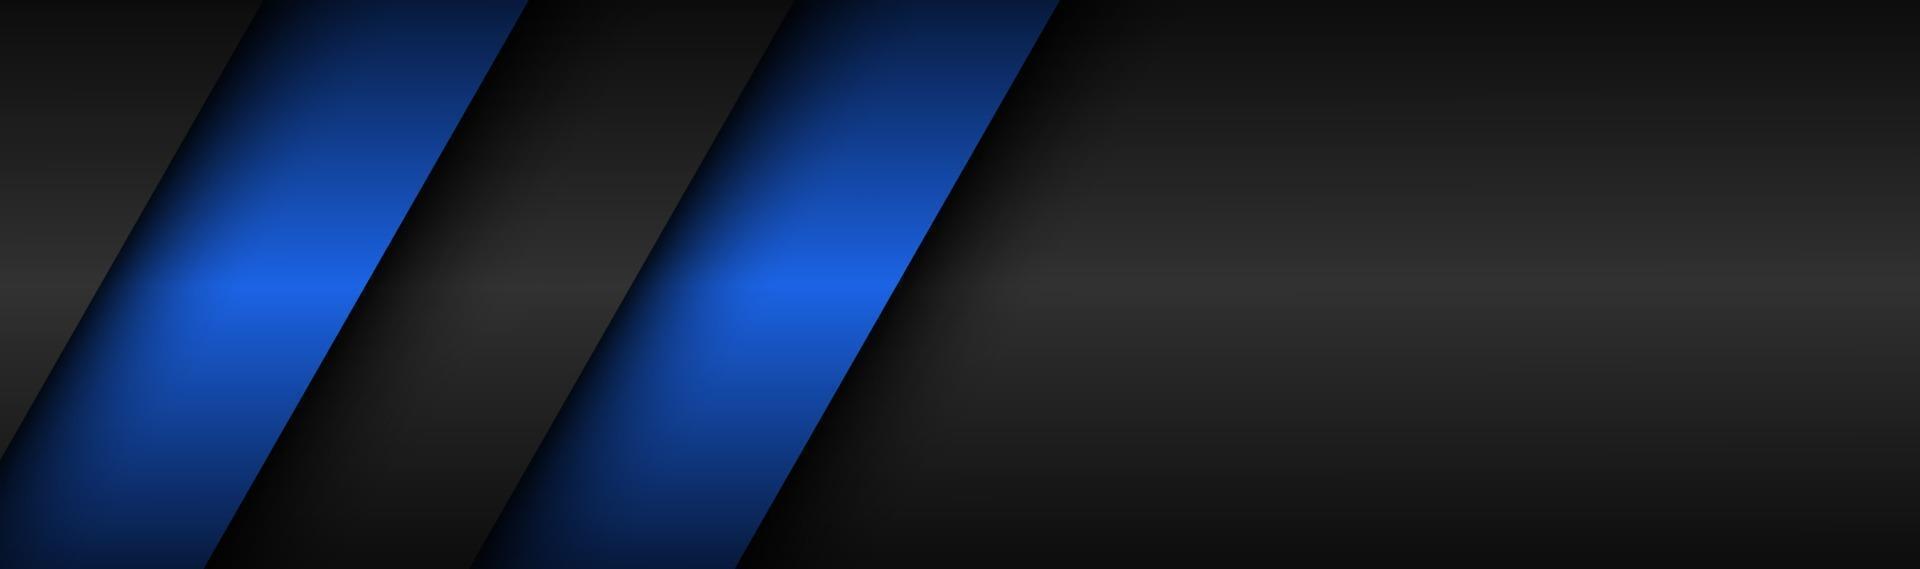 astratto nero e blu materiale moderno intestazione tecnologia banner vettore astratto sfondo widescreen